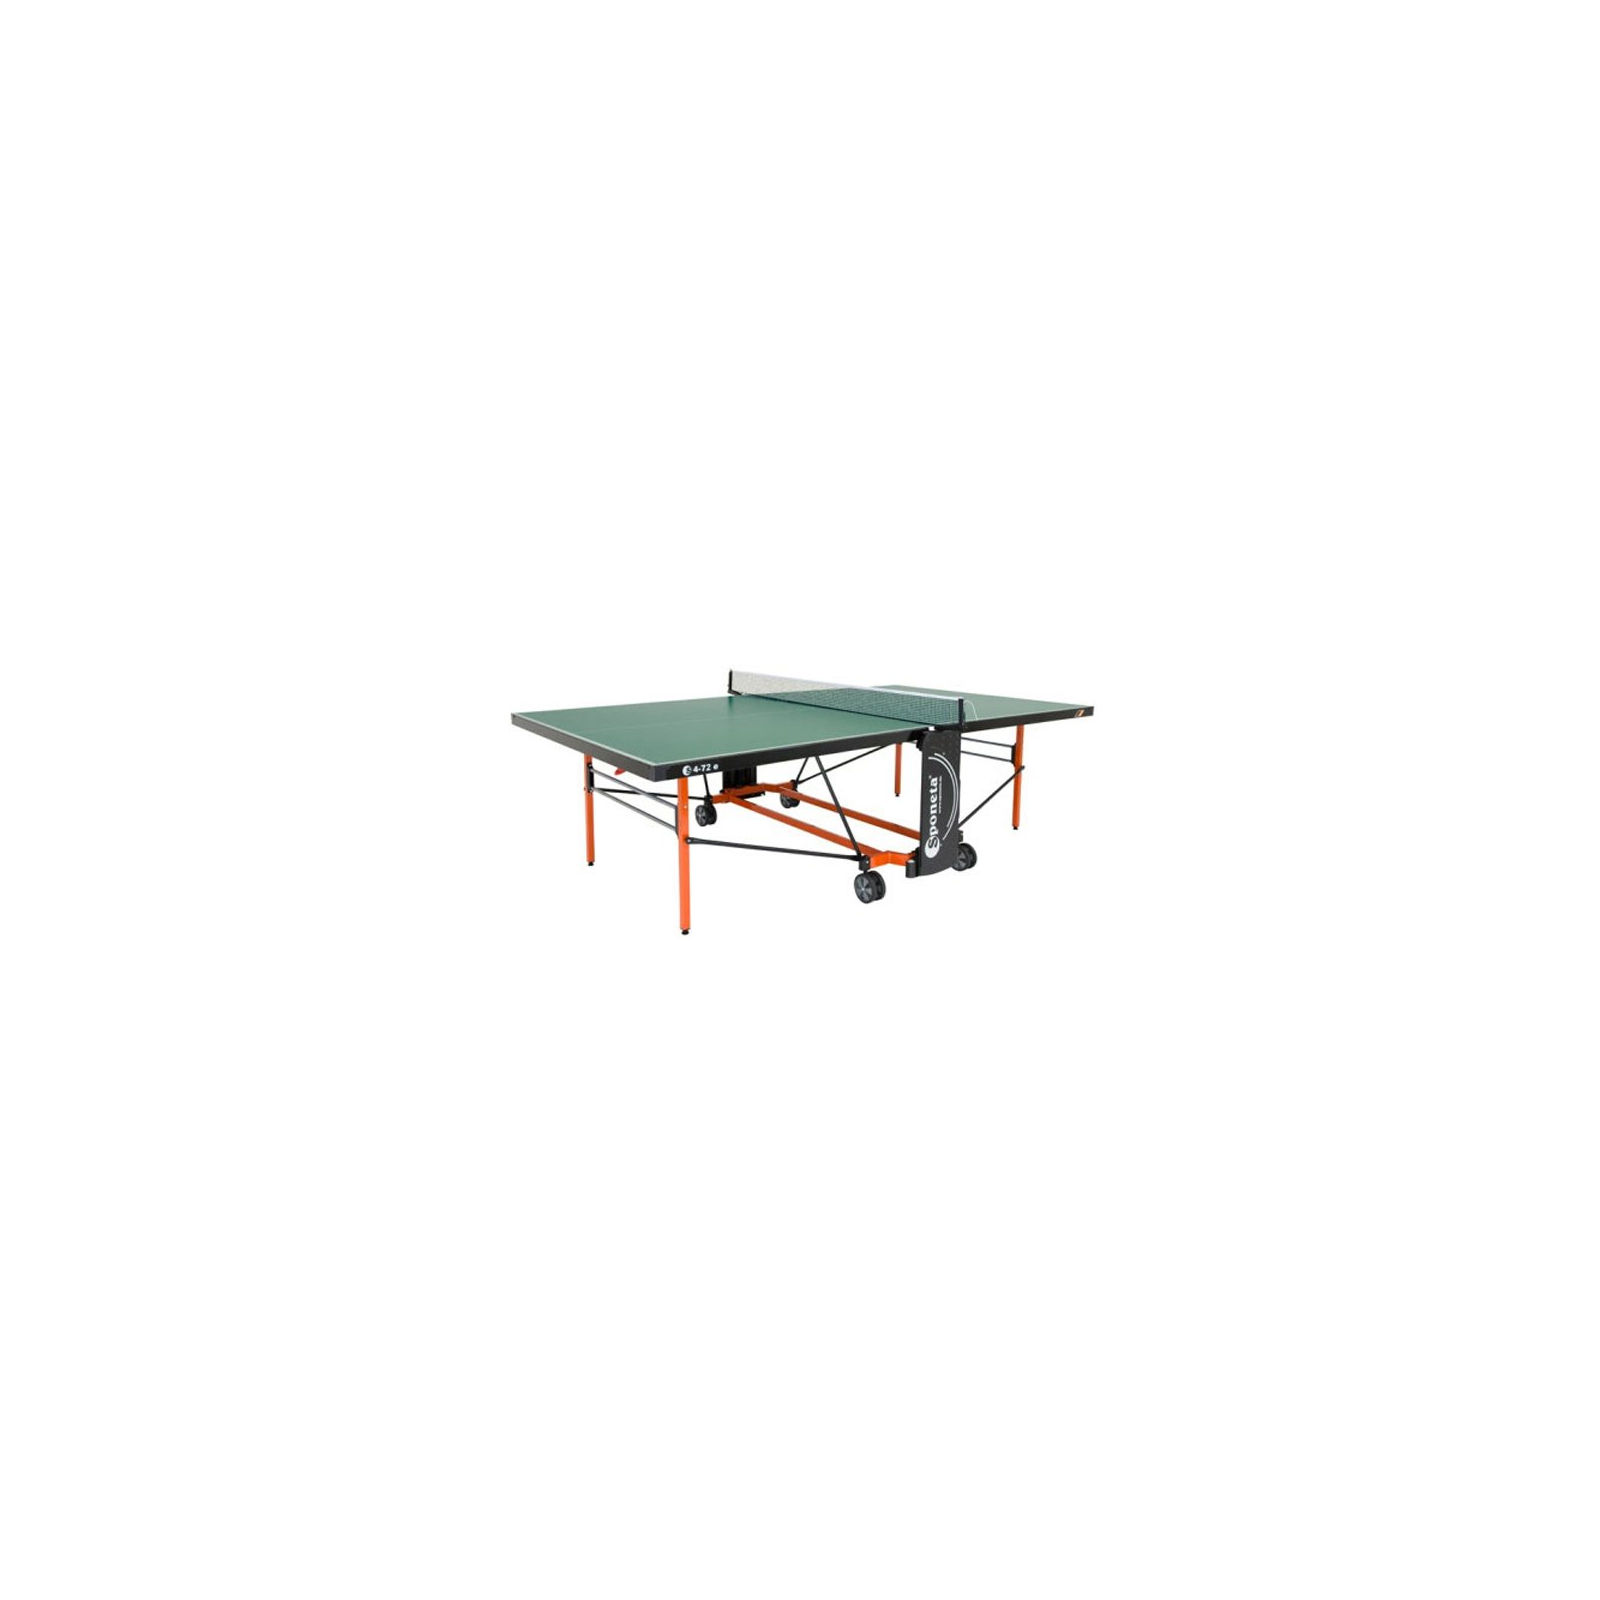 Теннисный стол Sponeta S4-72e